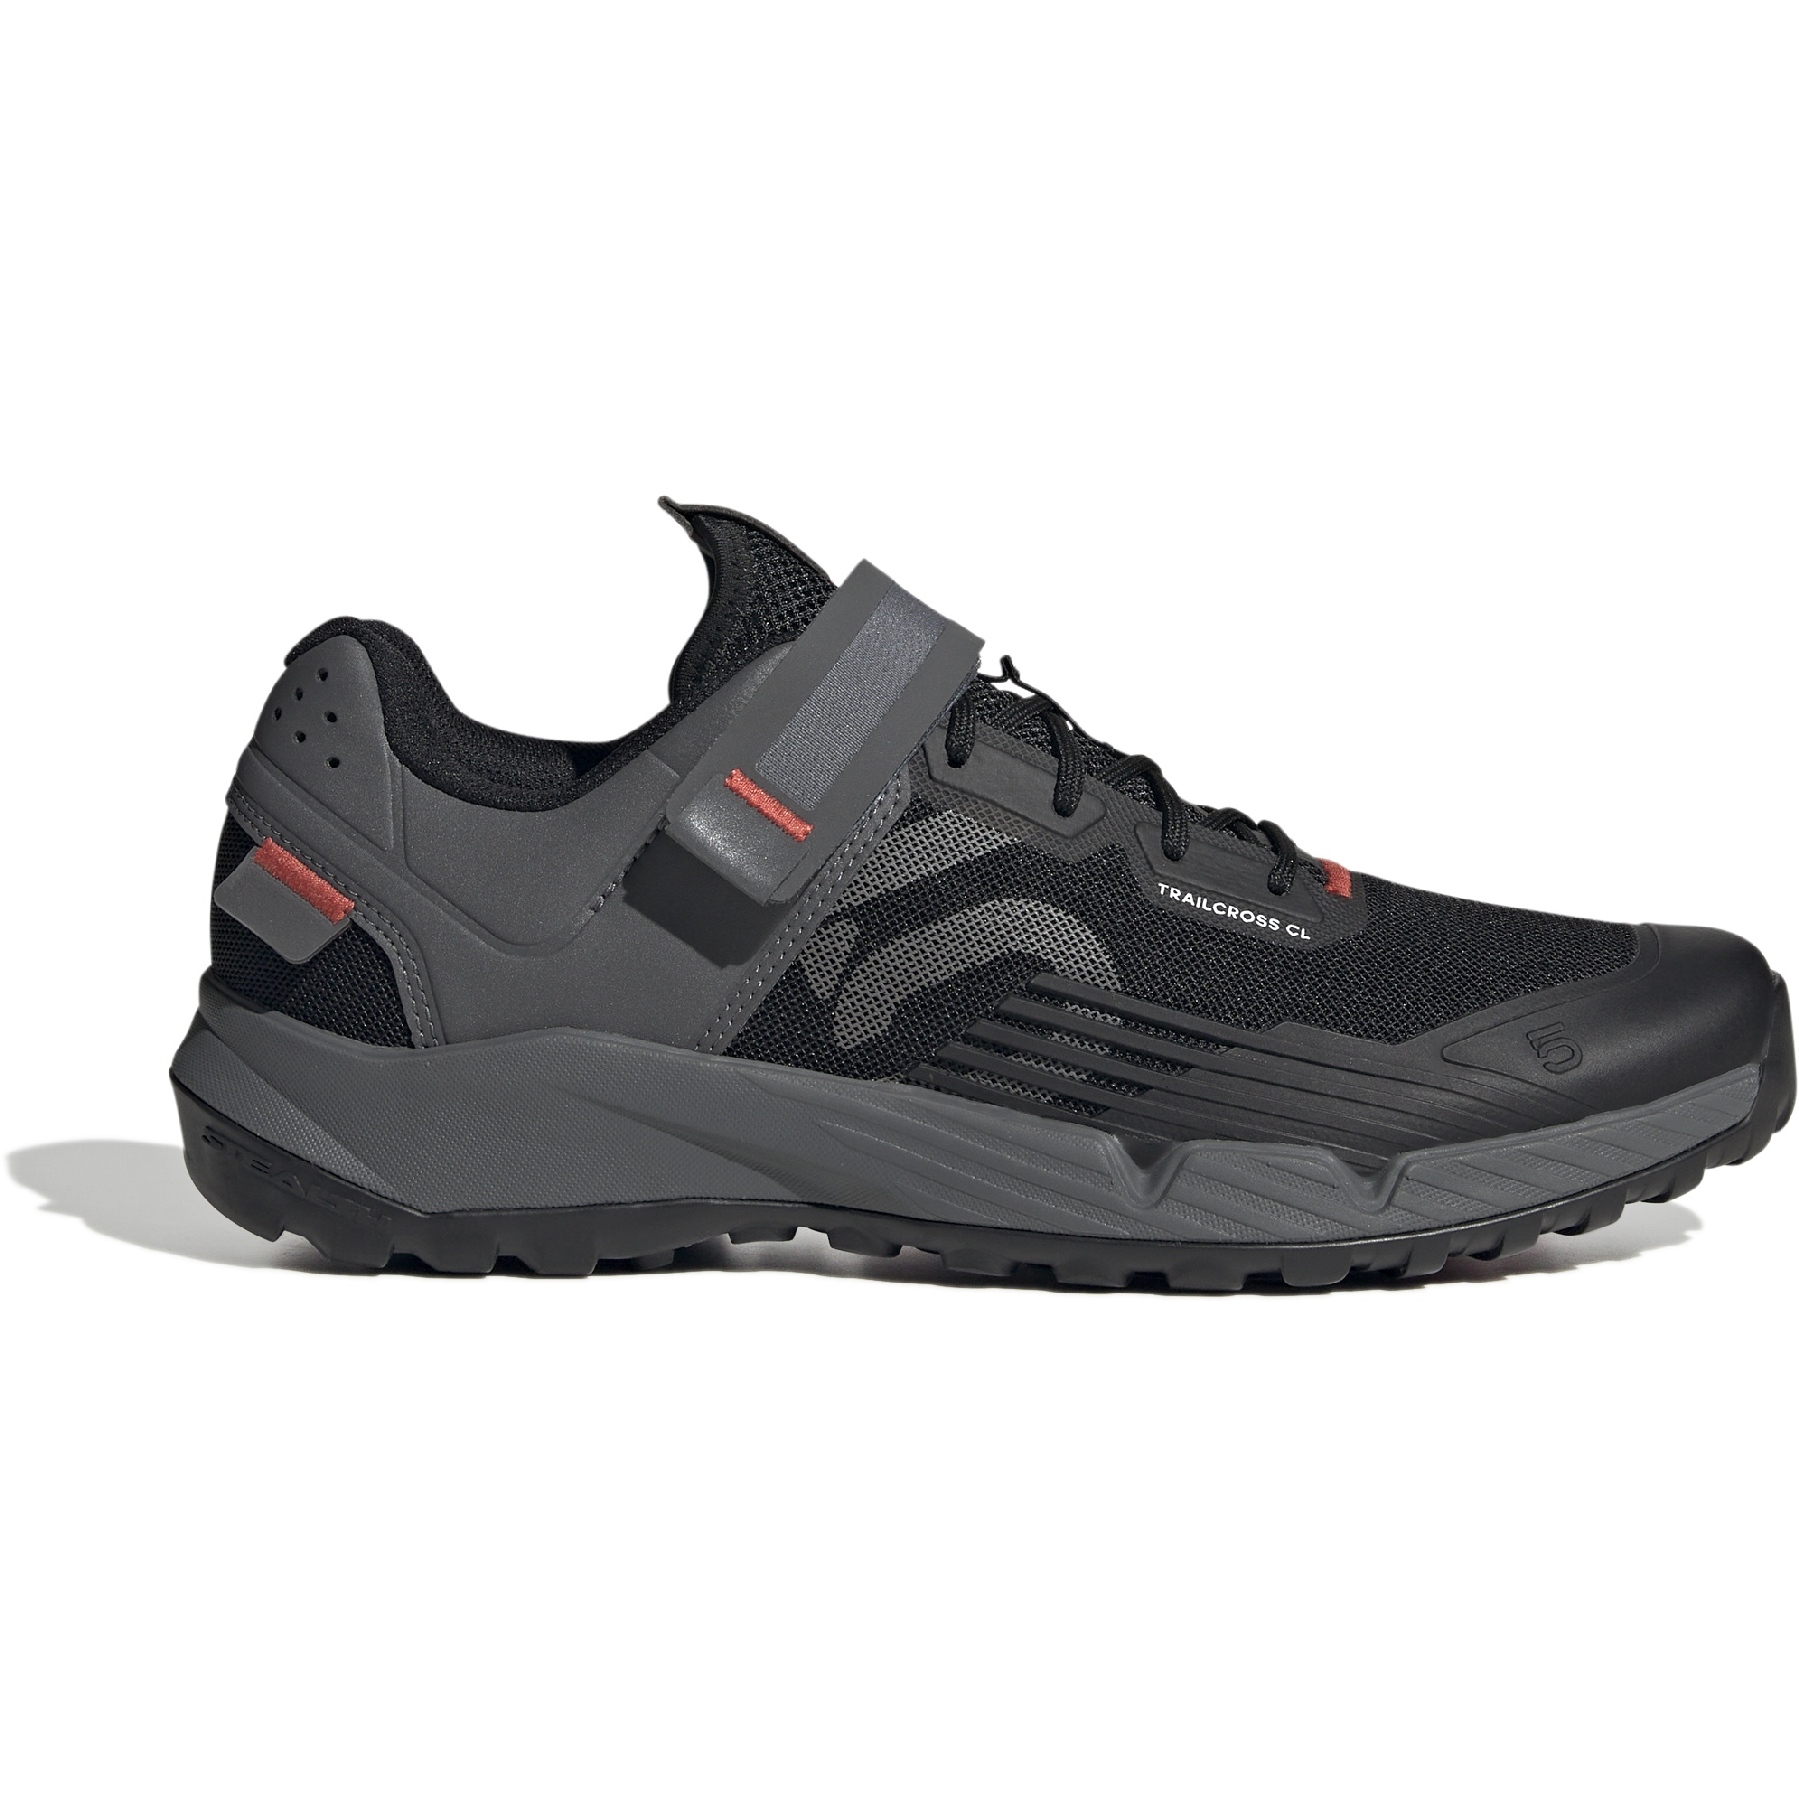 Productfoto van Five Ten Trailcross Clip-In Schoenen - Core Black / Grey Three / Red